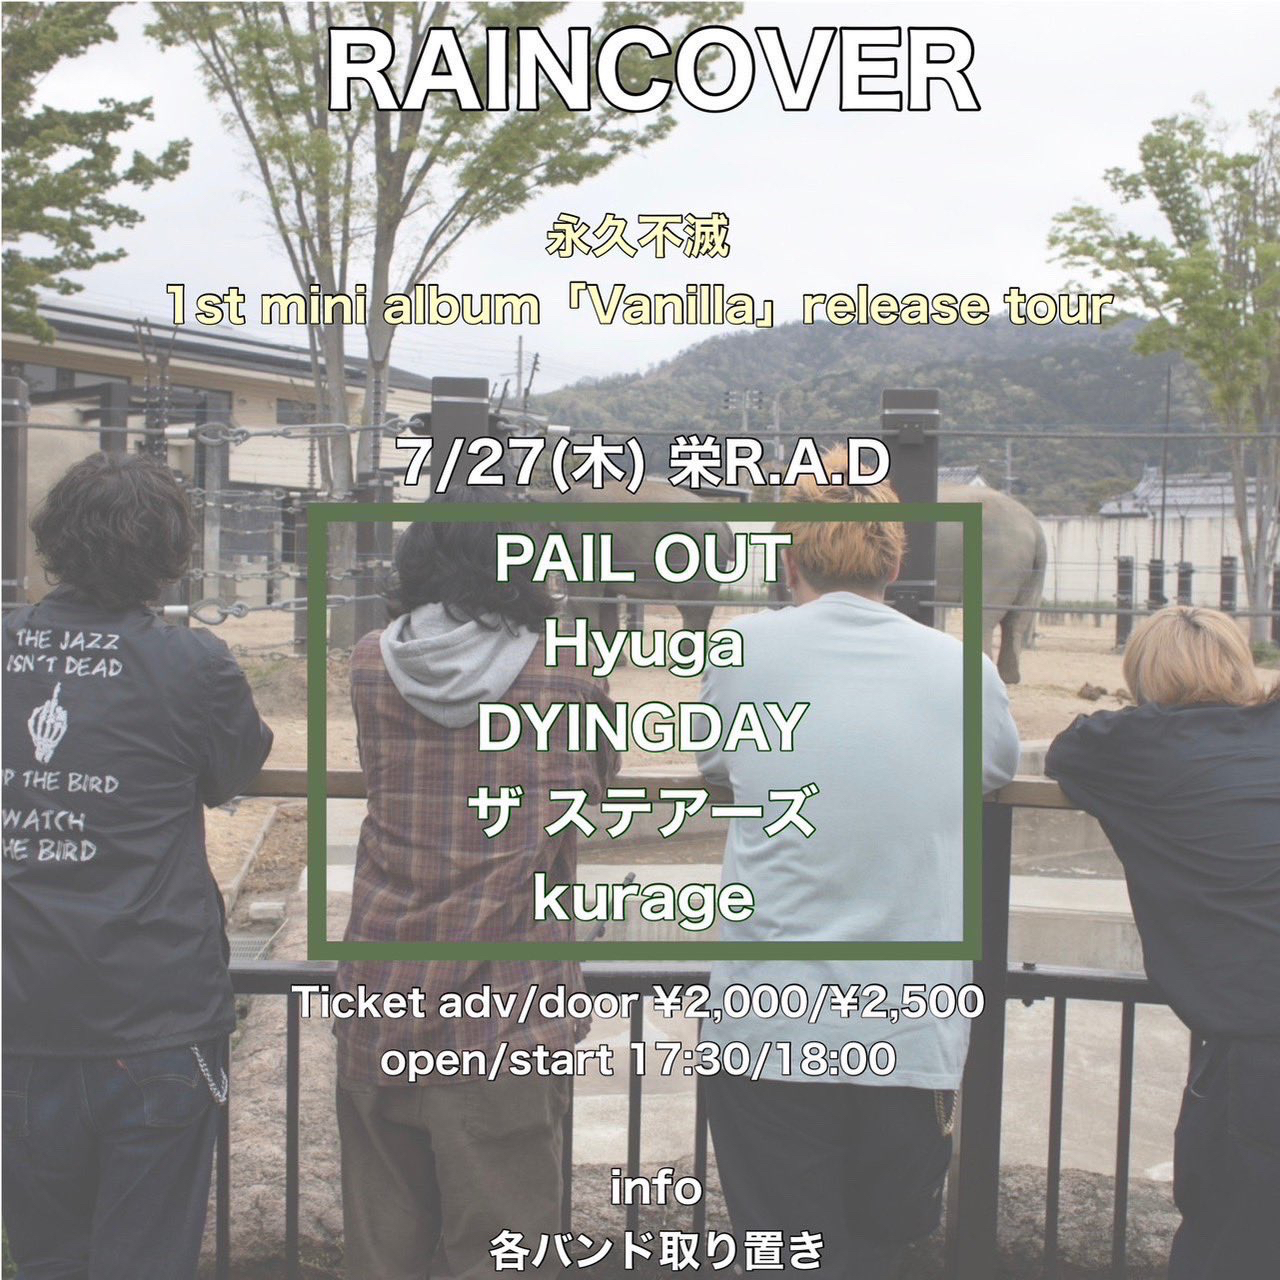 RAINCOVER 1st mini album「Vanilla」release tour "永久不滅ツアー"